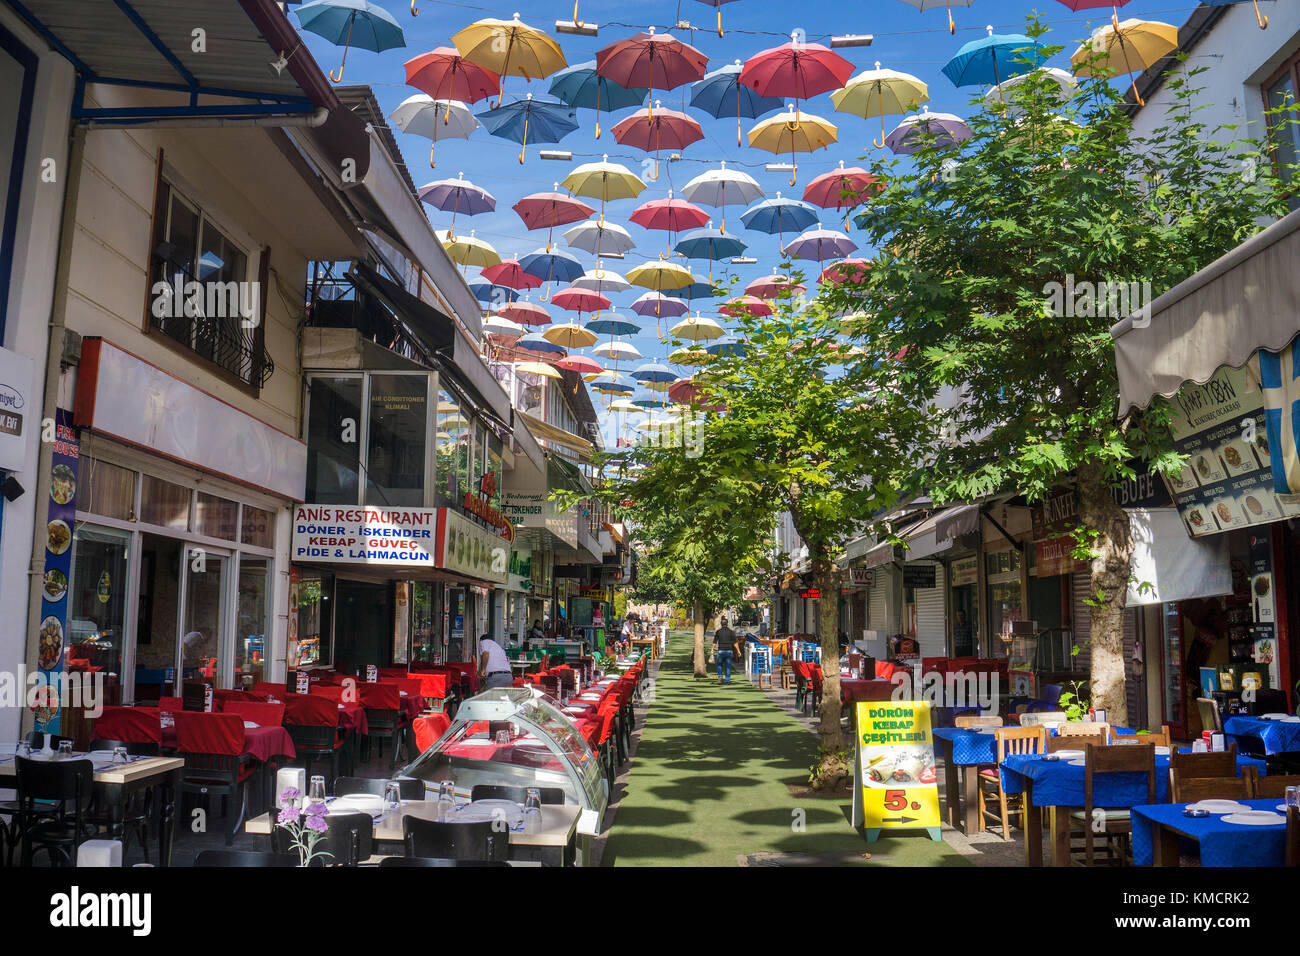 Gastronomia esterna in via ombrello, 2.Inoenue Sokak, Kaleici, città vecchia di Antalya, riviera turca, Turchia Foto Stock